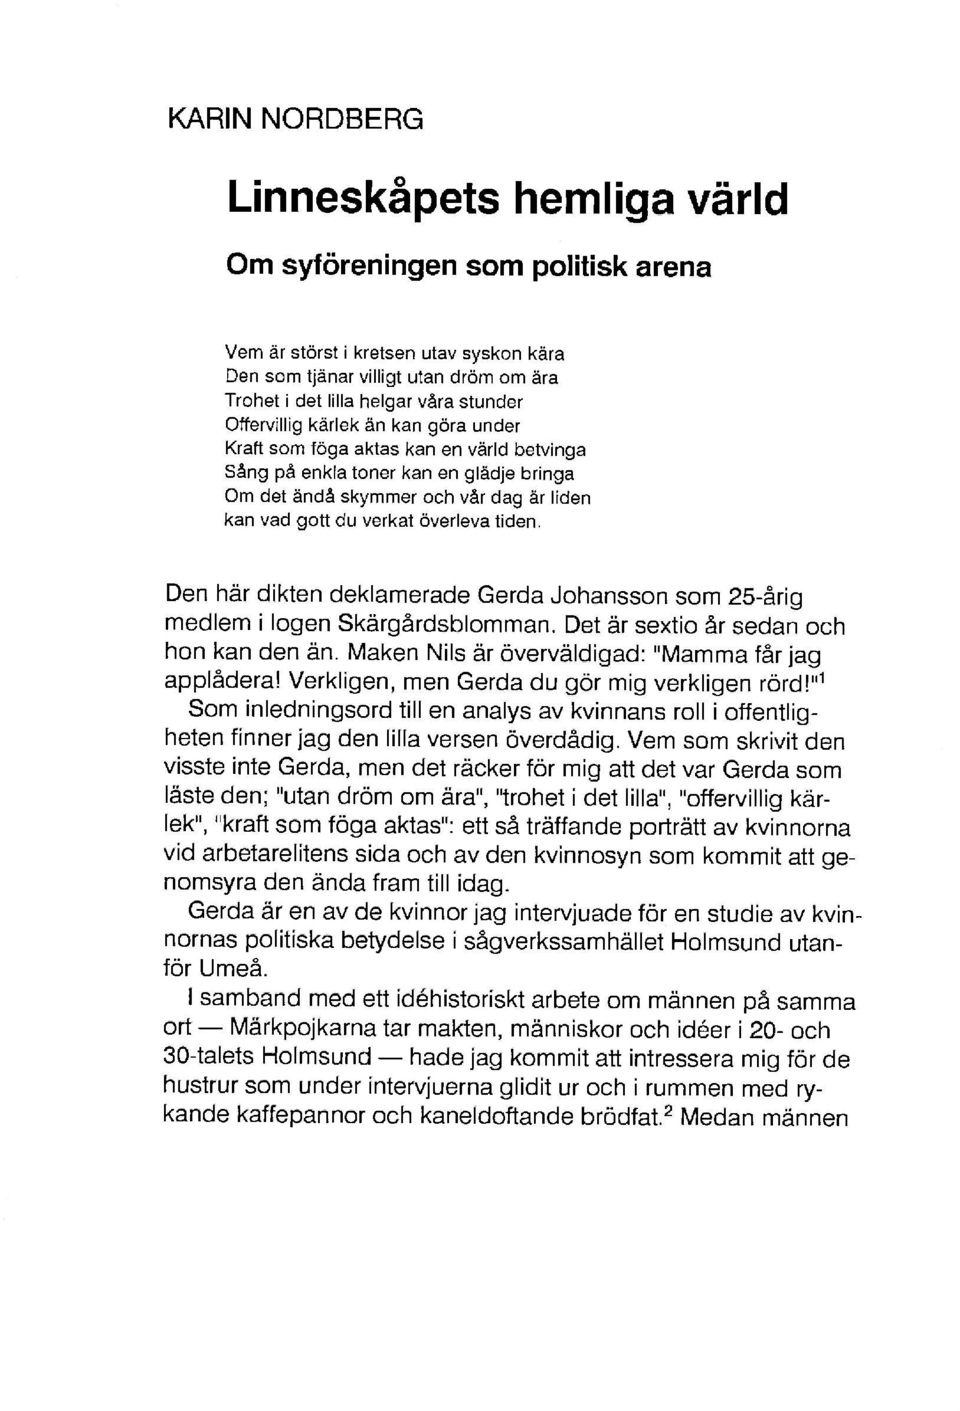 Den här dikten deklamerade Gerda Johansson som 25-årig medlem i logen Skärgårdsblomman. Det är sextio år sedan och hon kan den än. Maken Nils är överväldigad: "Mamma får jag applådera!